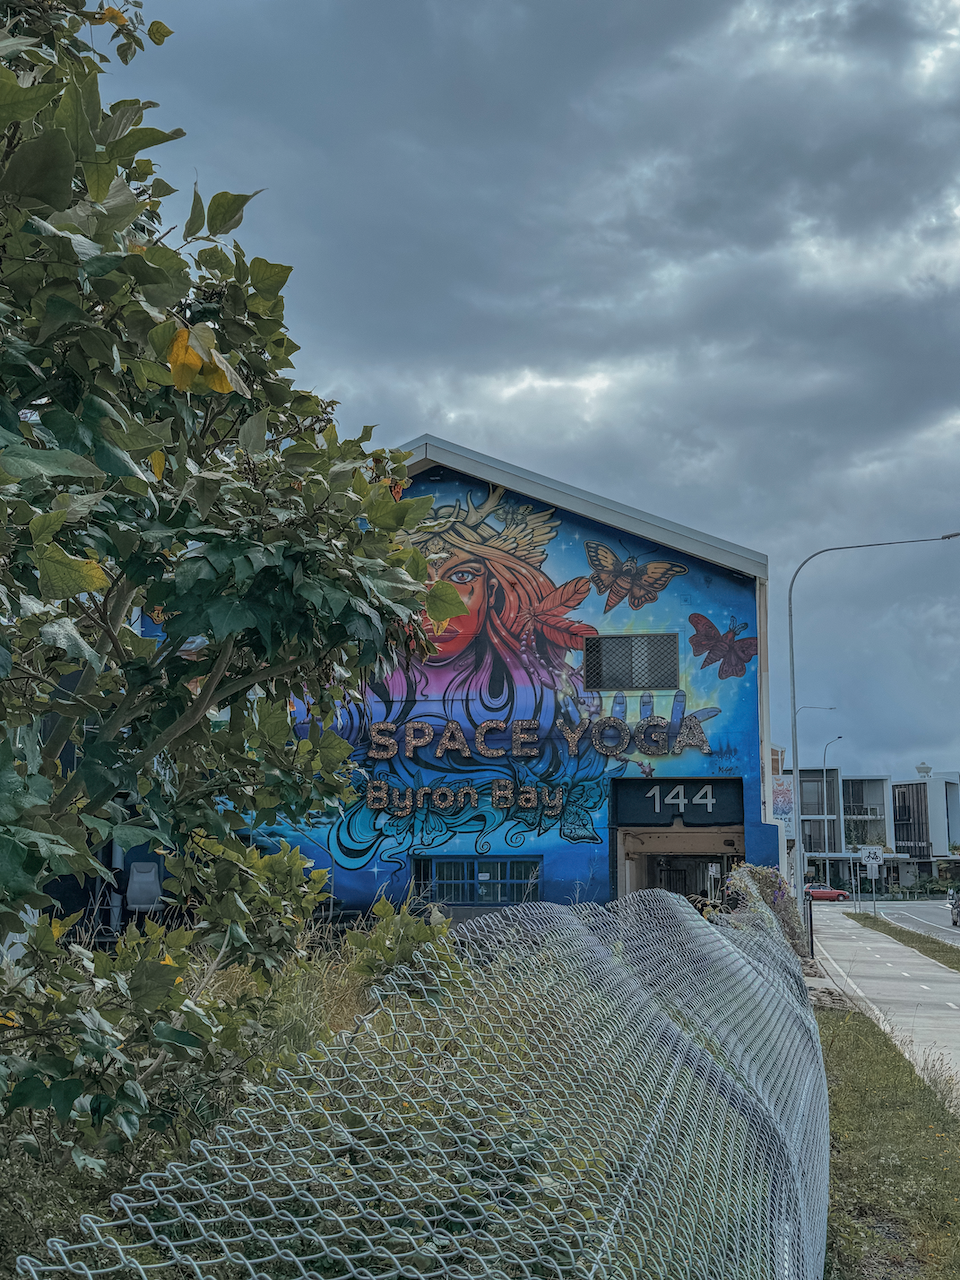 Space yoga graffiti  - Byron Bay - New South Wales - Australie